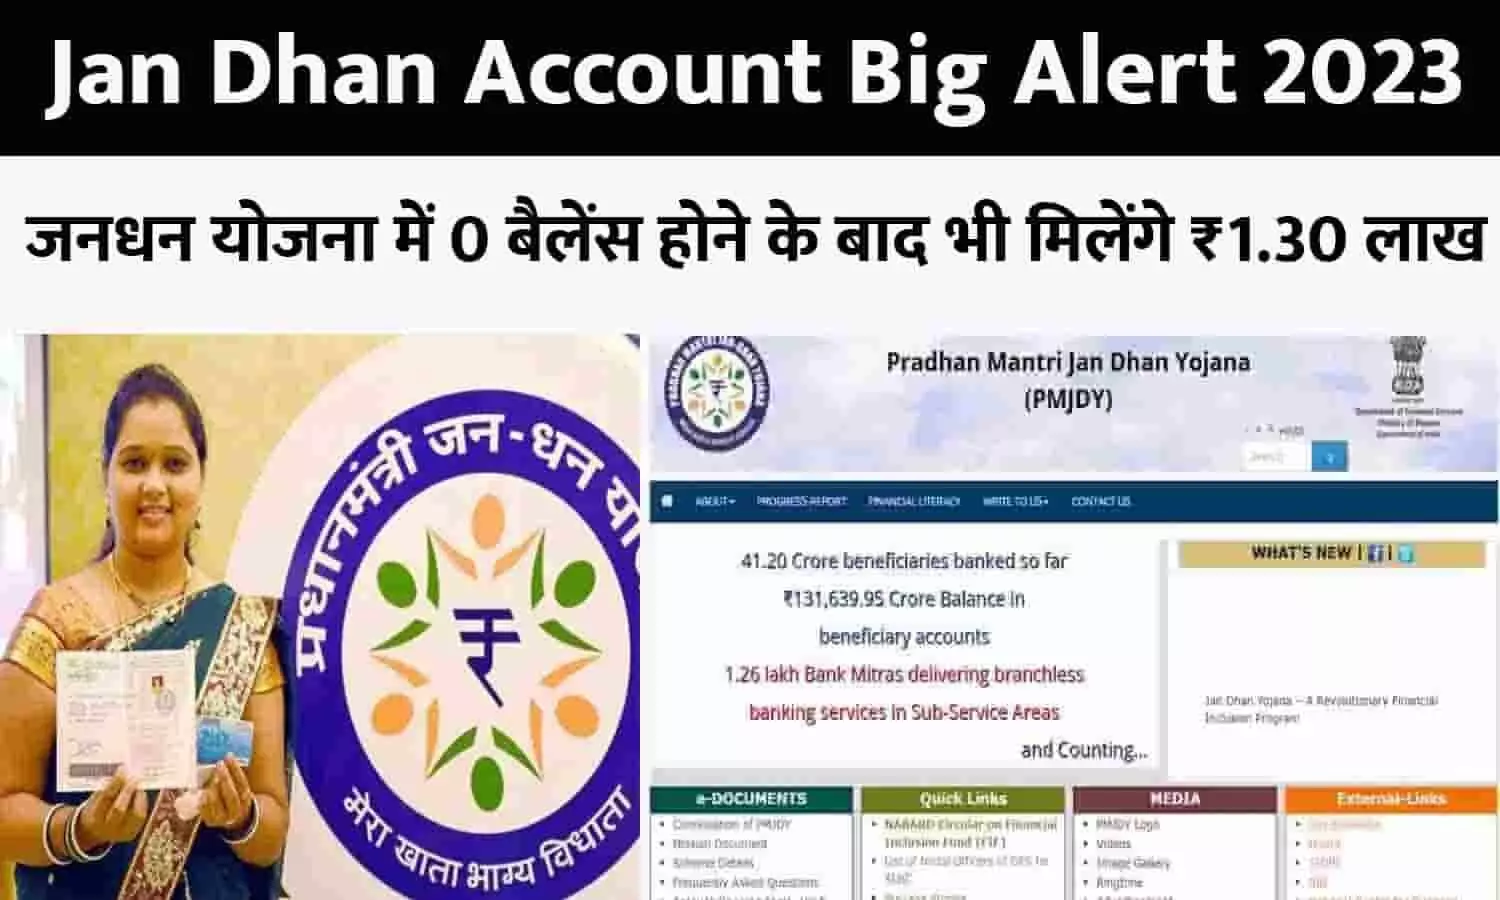 Jan Dhan Account Big Alert 2023: खुशखबरी! जनधन योजना में 0 बैलेंस होने के बाद भी मिलेंगे ₹1.30 लाख, बिन देर किए फटाफट उठाएं फायदा